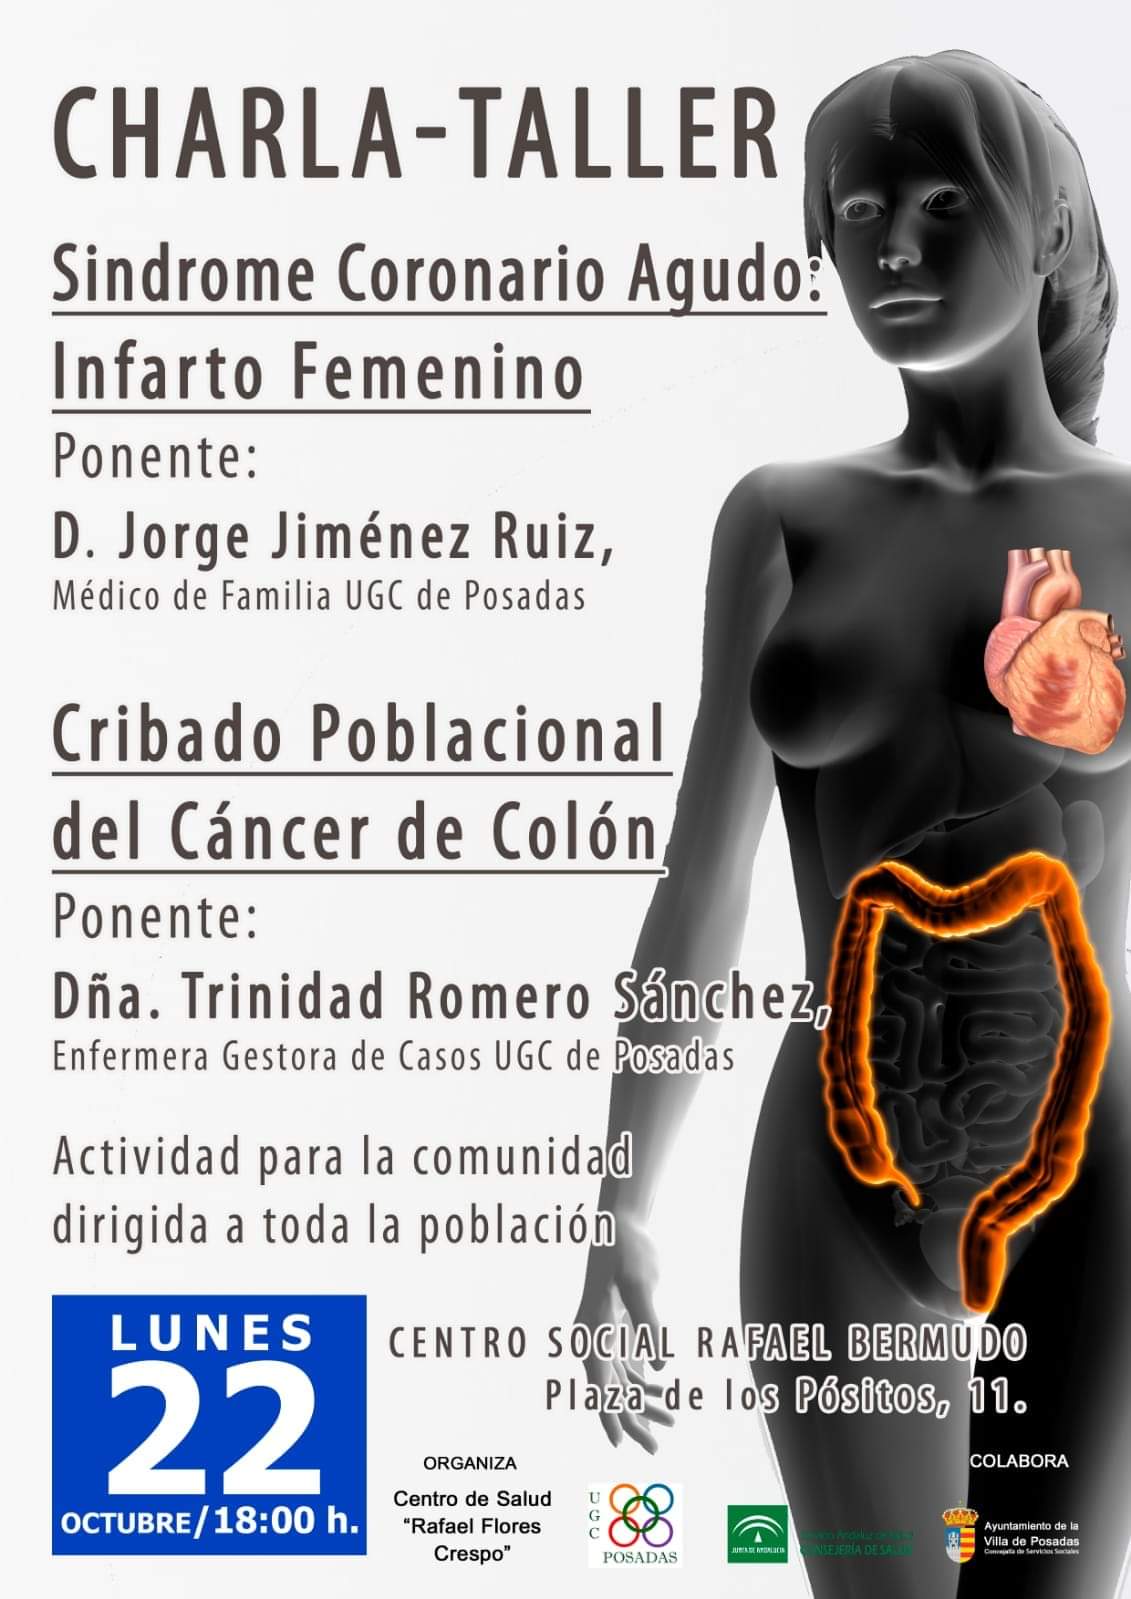 Charla -Taller Infarto femenino y Diagnostico Precoz Cáncer de Colon hatsApp Image 2018-10-16 at 16.53.38